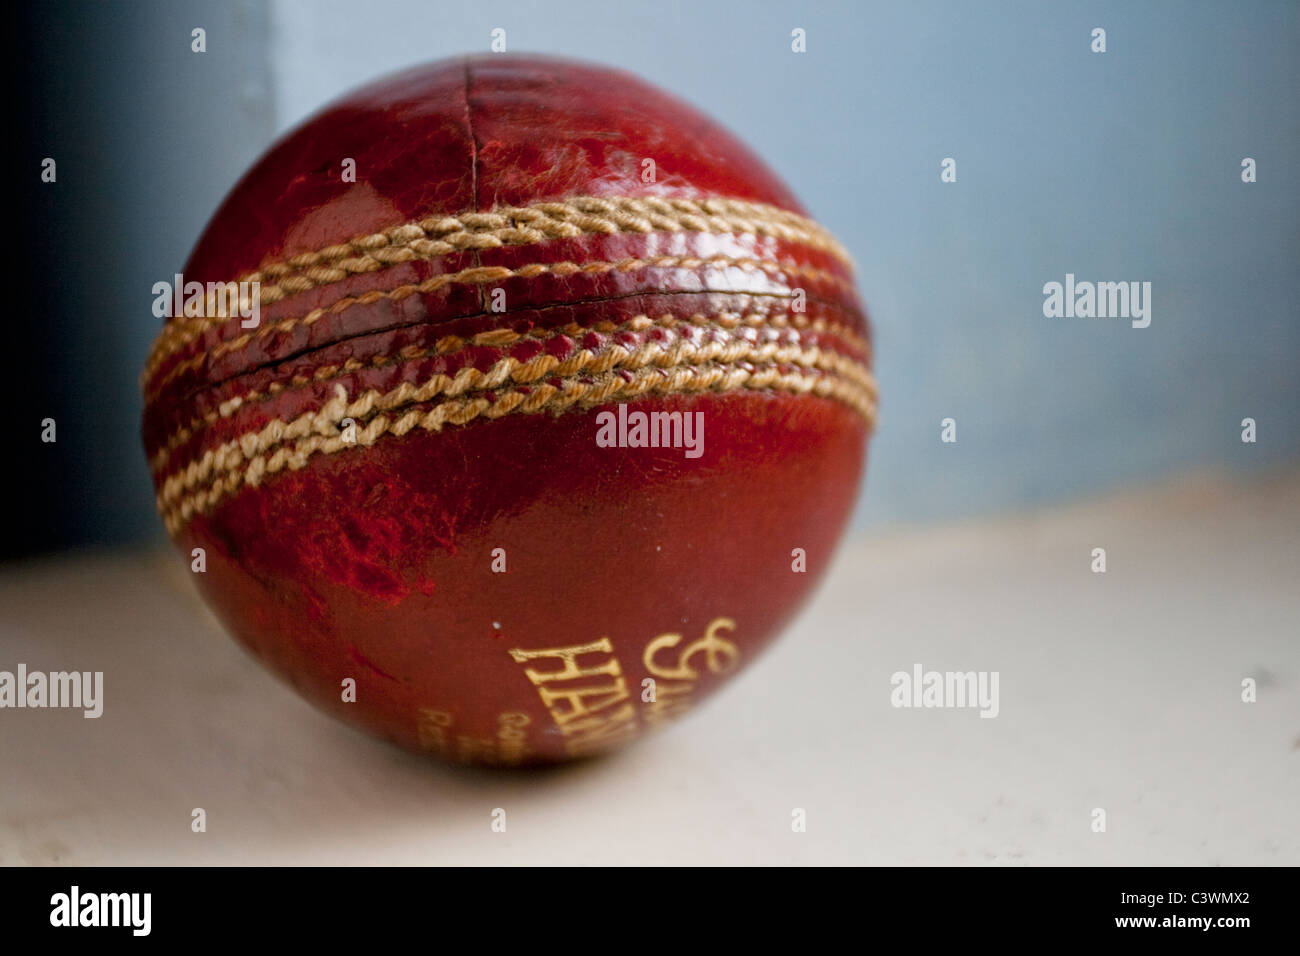 Cricket ball Stock Photo